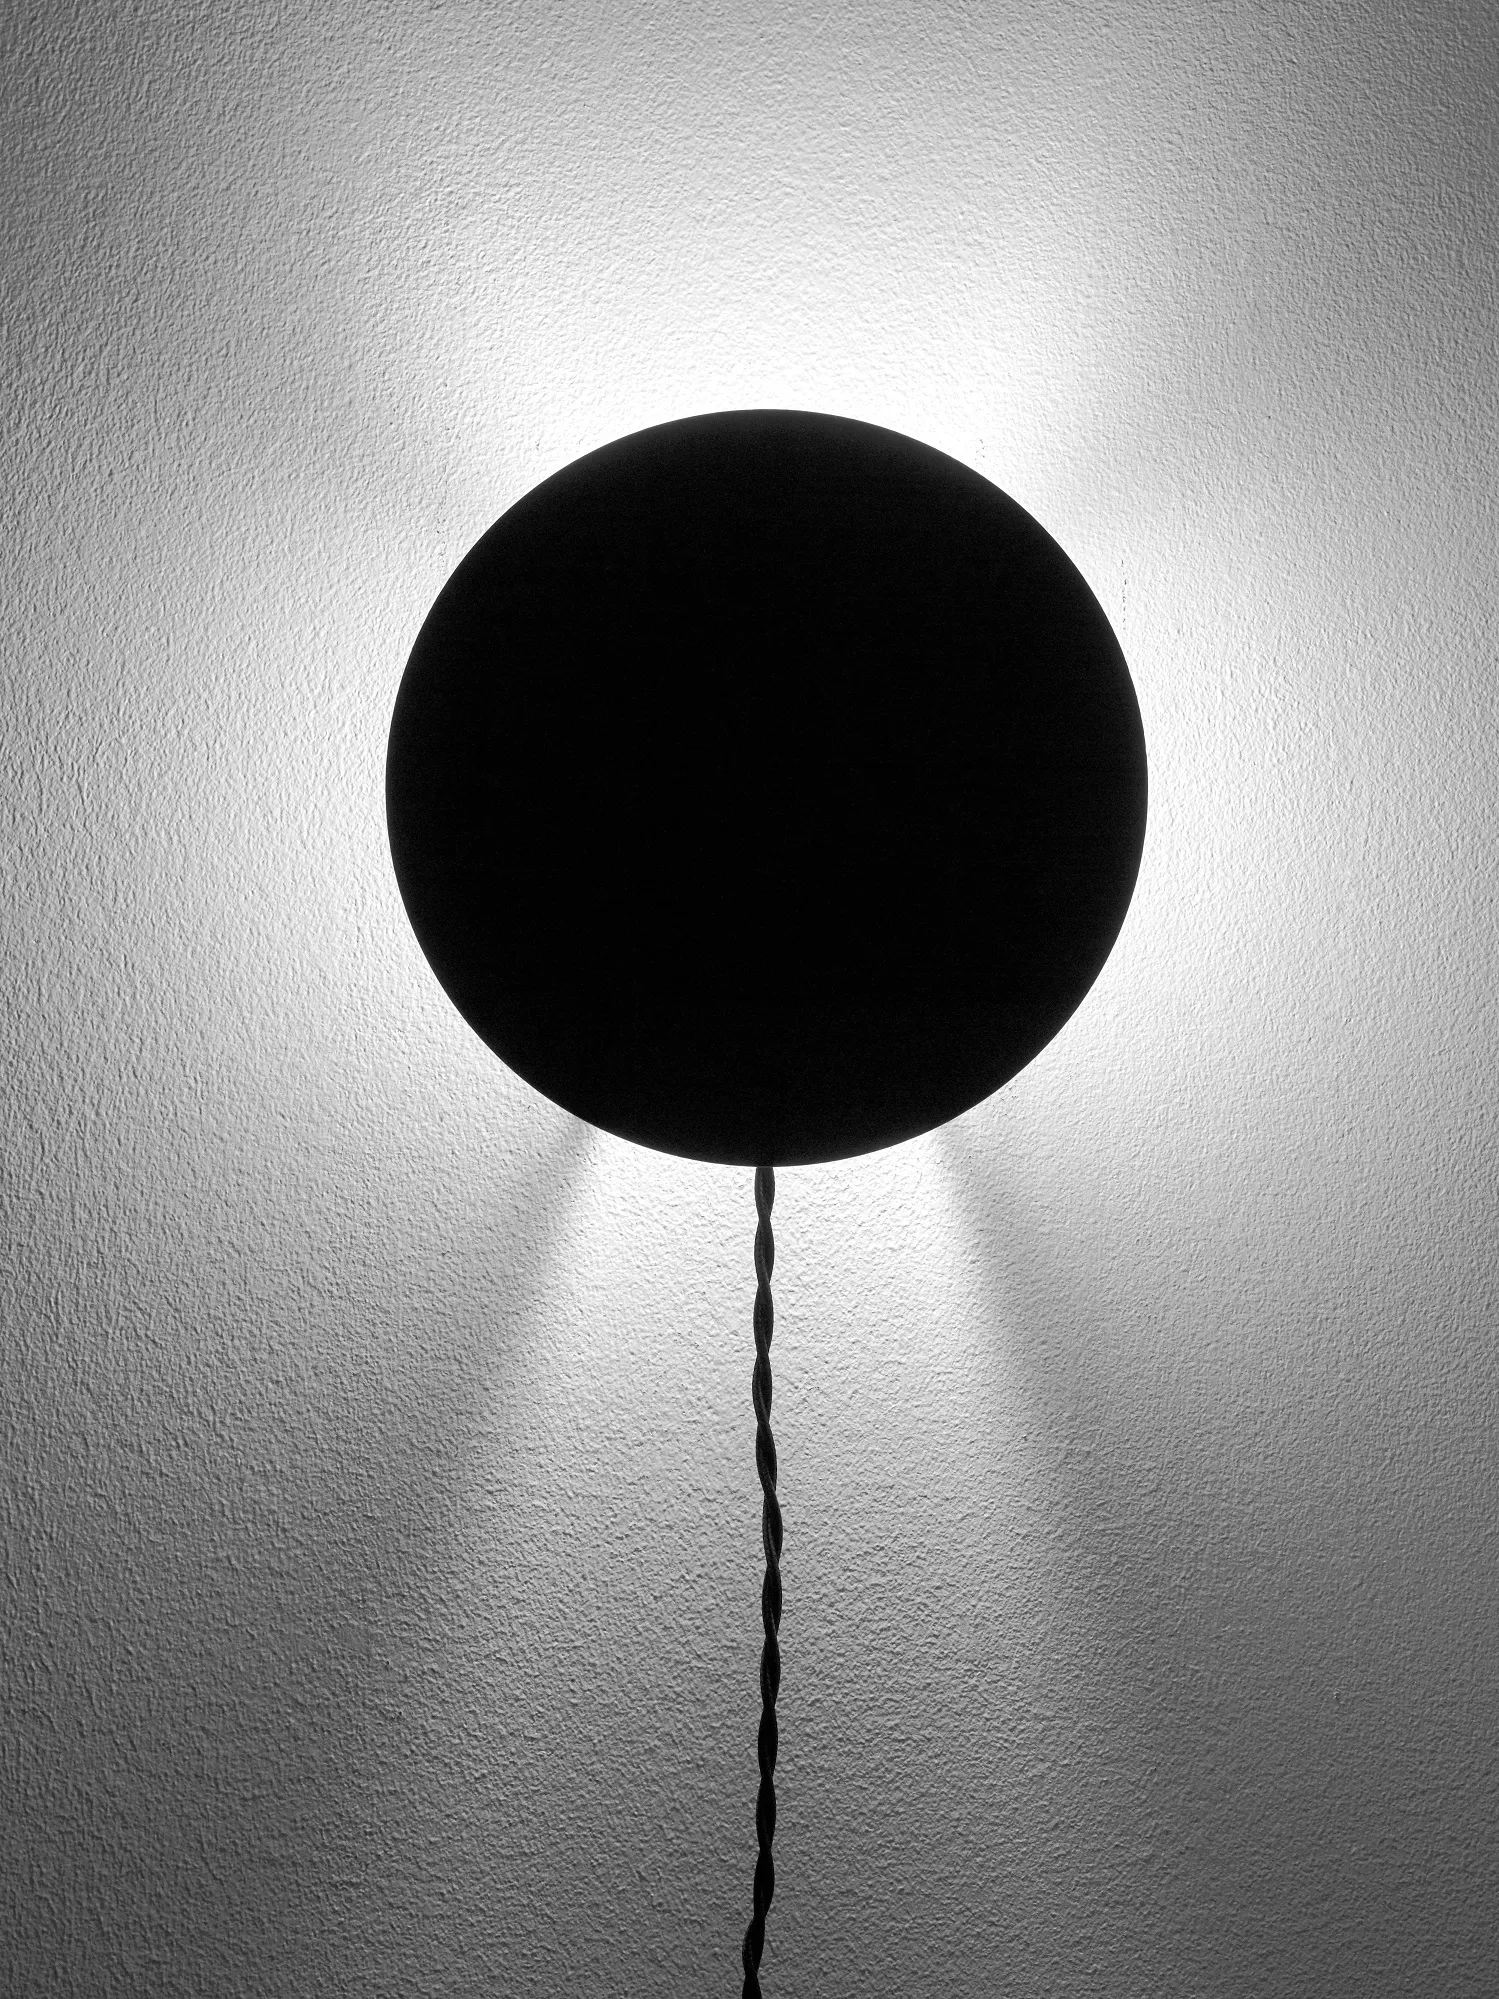 Wall Lamp Black Scudo L 20 W 8 H 20CM by Antonino Sciortino